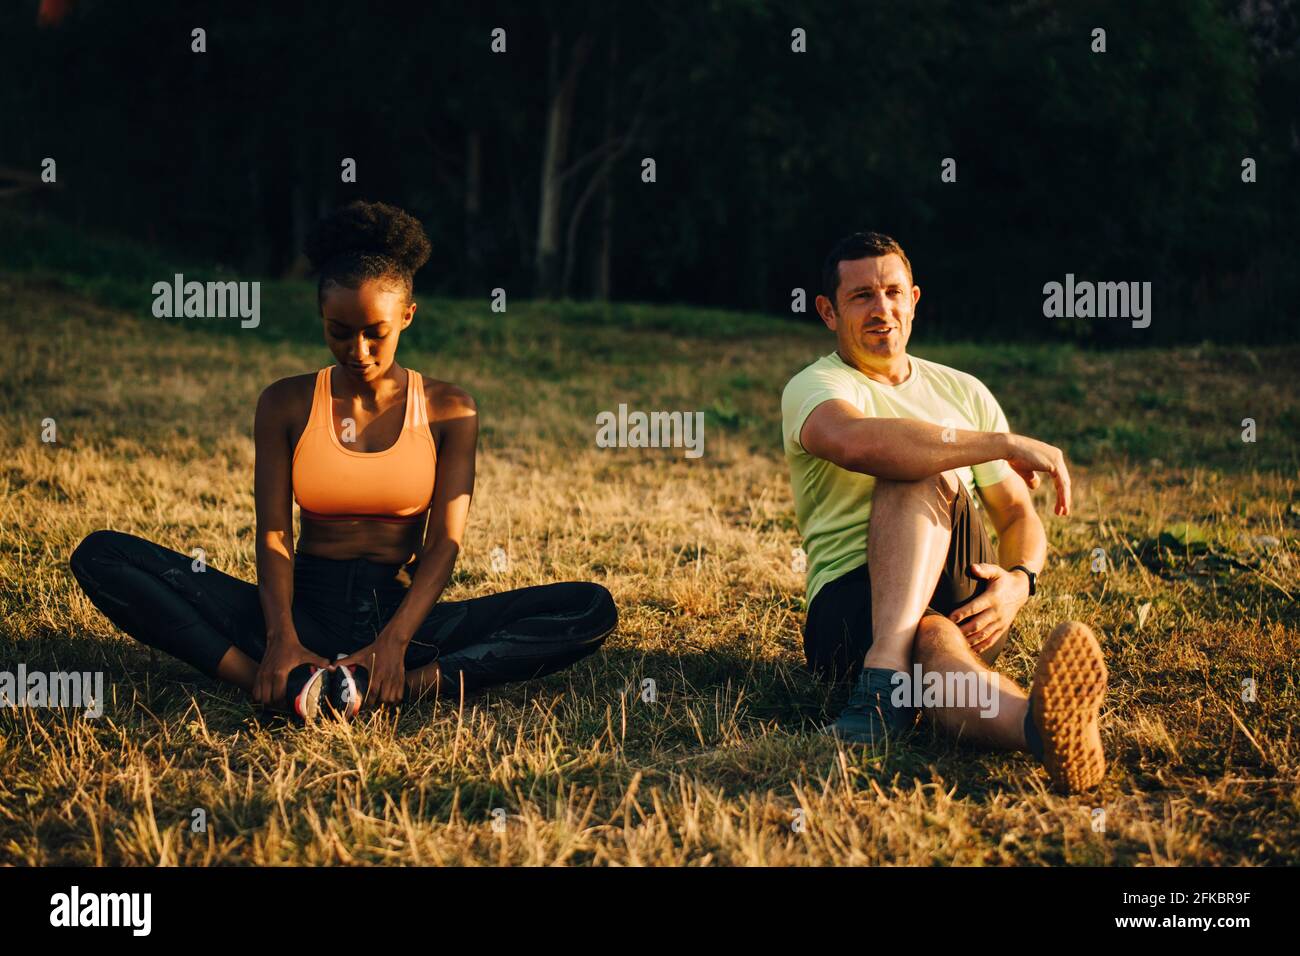 Sportler und Sportlerin machen Entspannungsübungen, während sie auf Gras sitzen Bereich Stockfoto